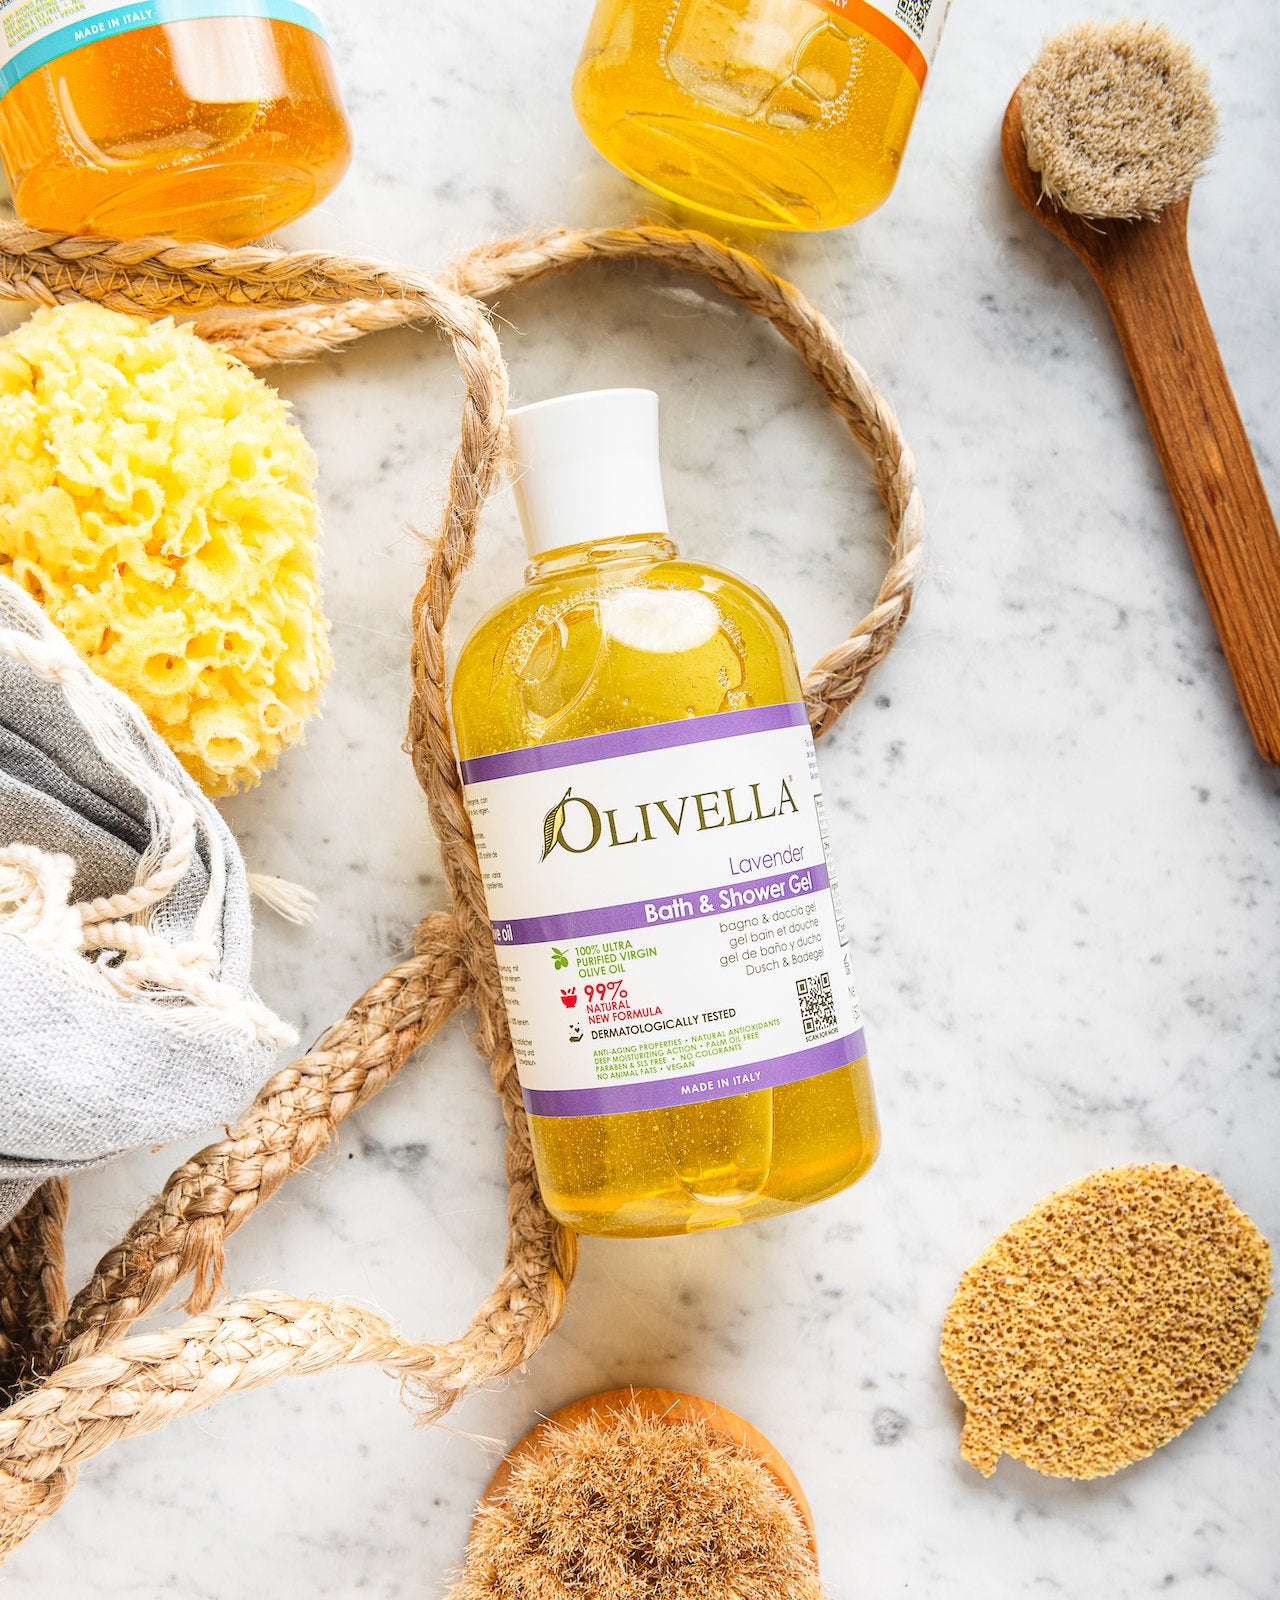 Olivella Bath & Shower Gel - Lavender 16.9 Oz - Olivella